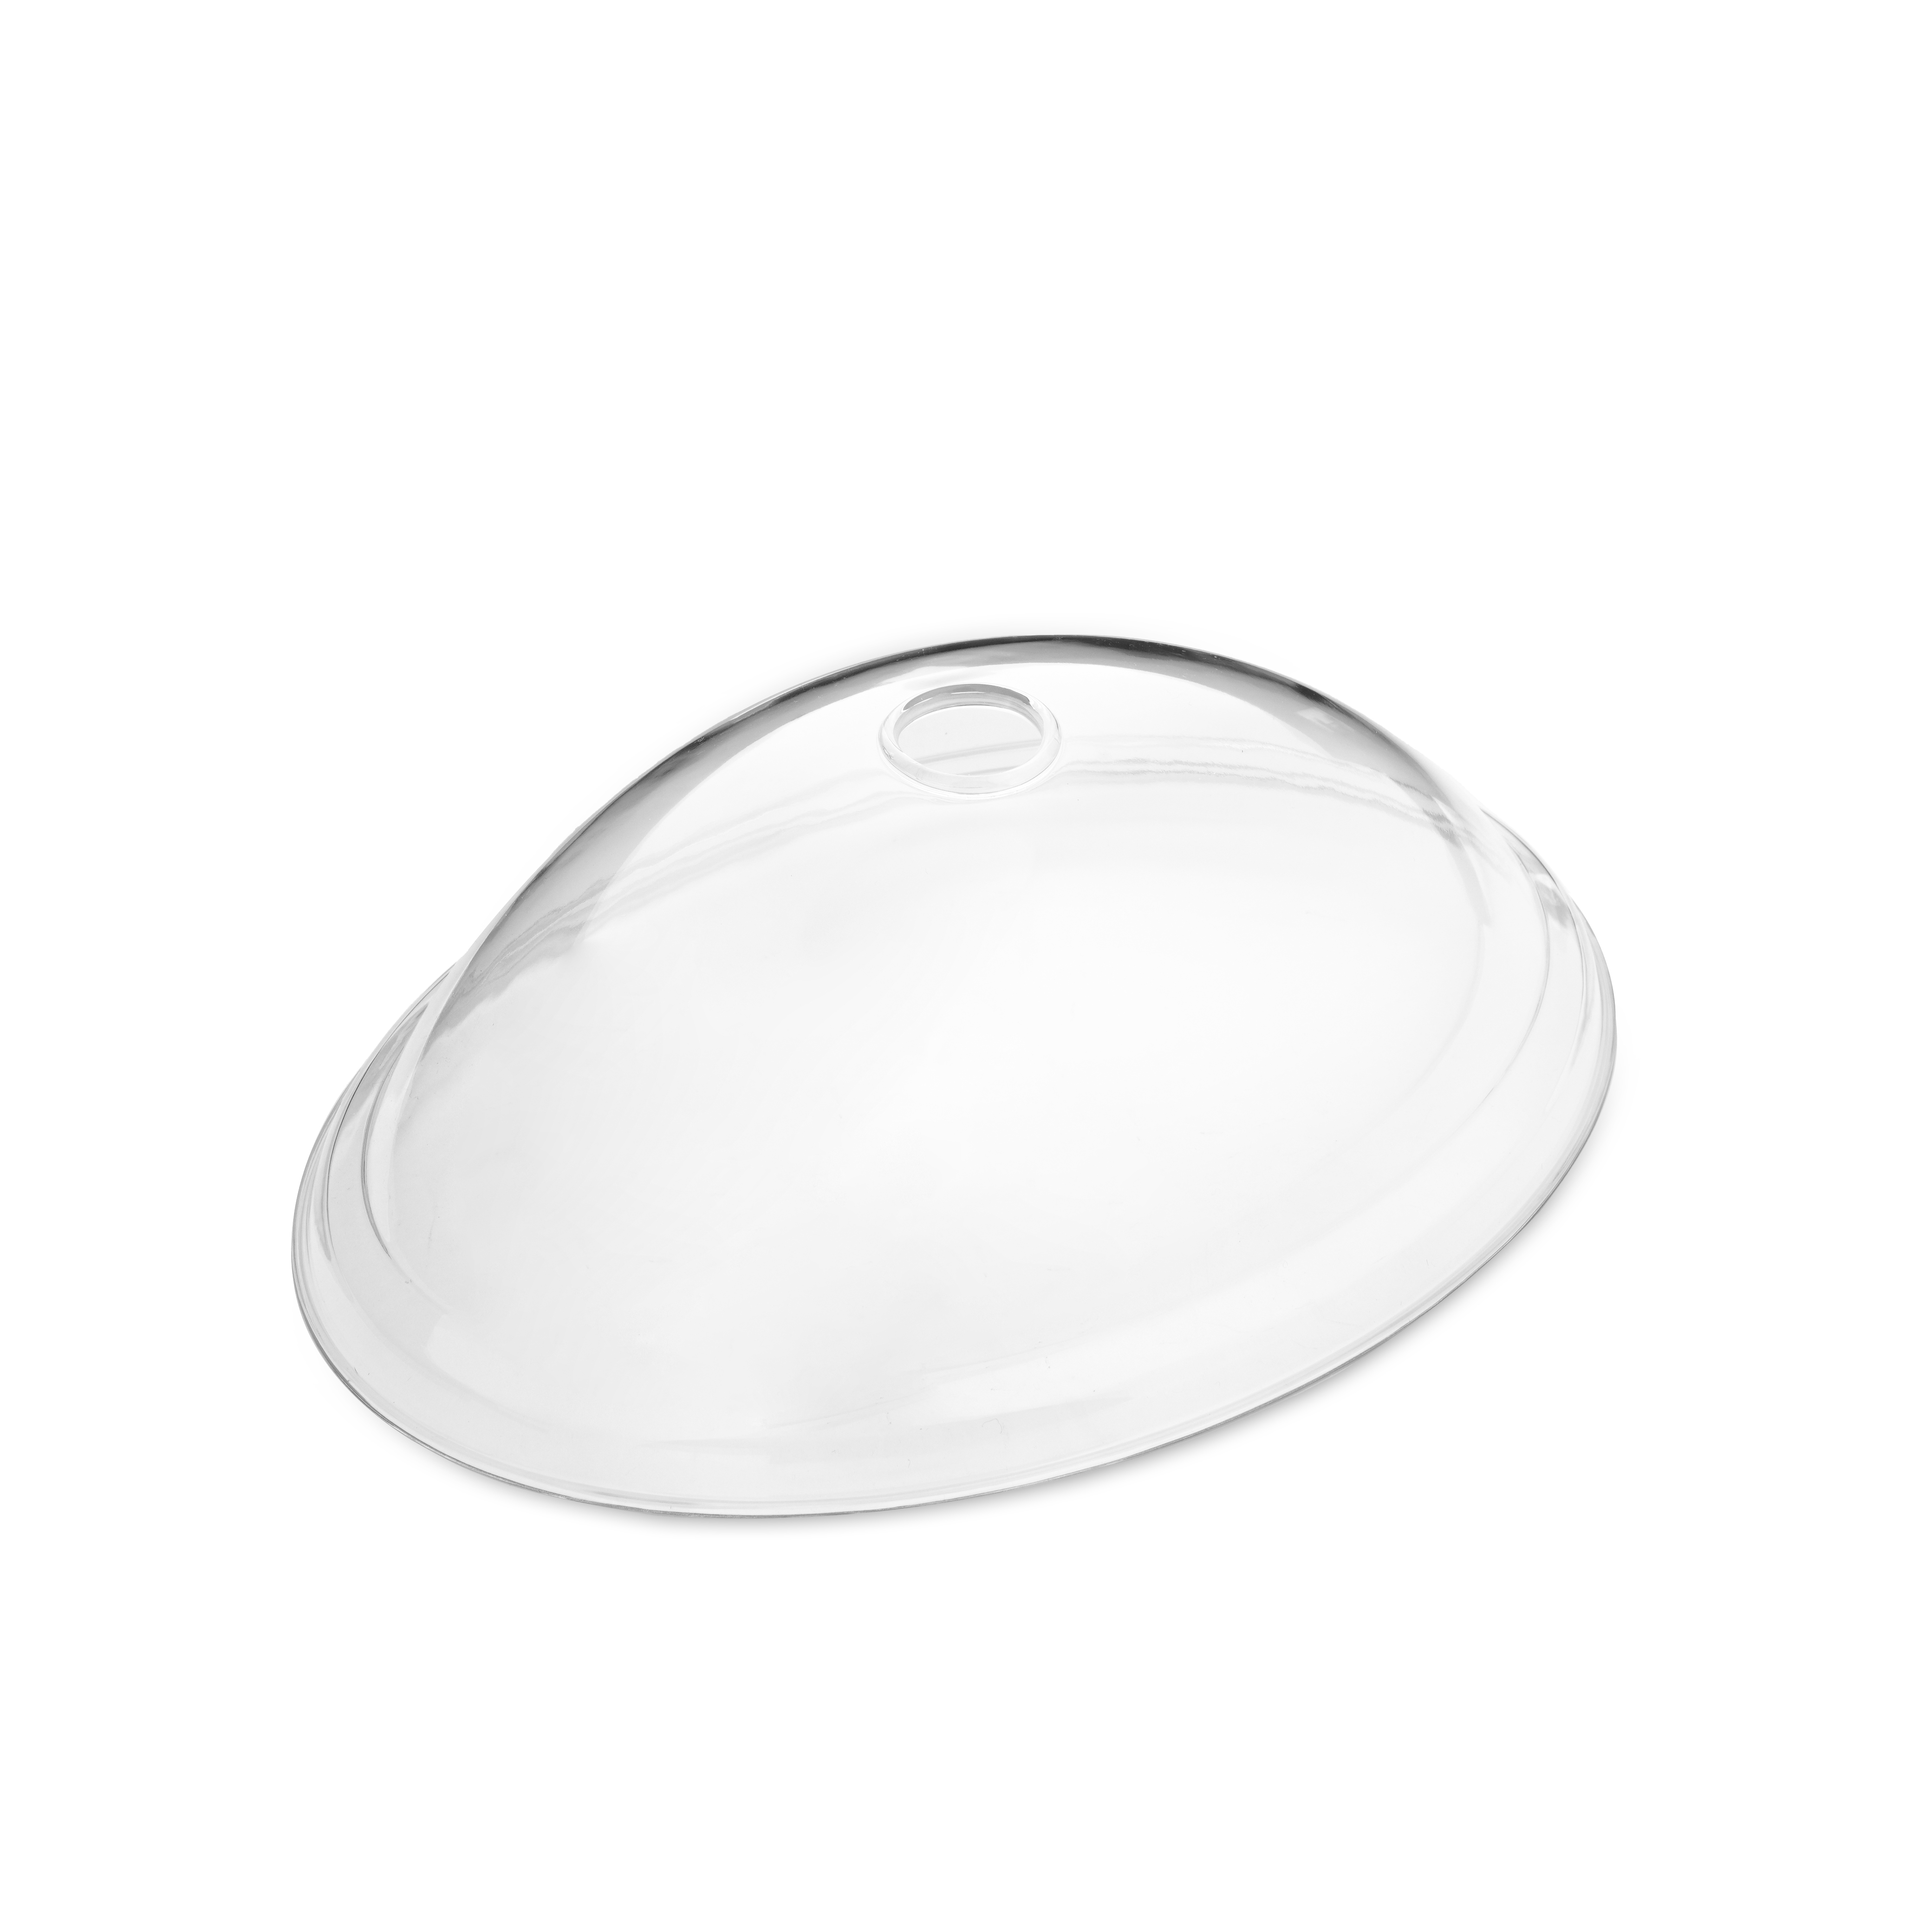 Nắp đậy thực phẩm, nắp đậy đồ ăn trên dĩa bằng nhựa cao cấp màu trắng trong hình oval- nhiều size 